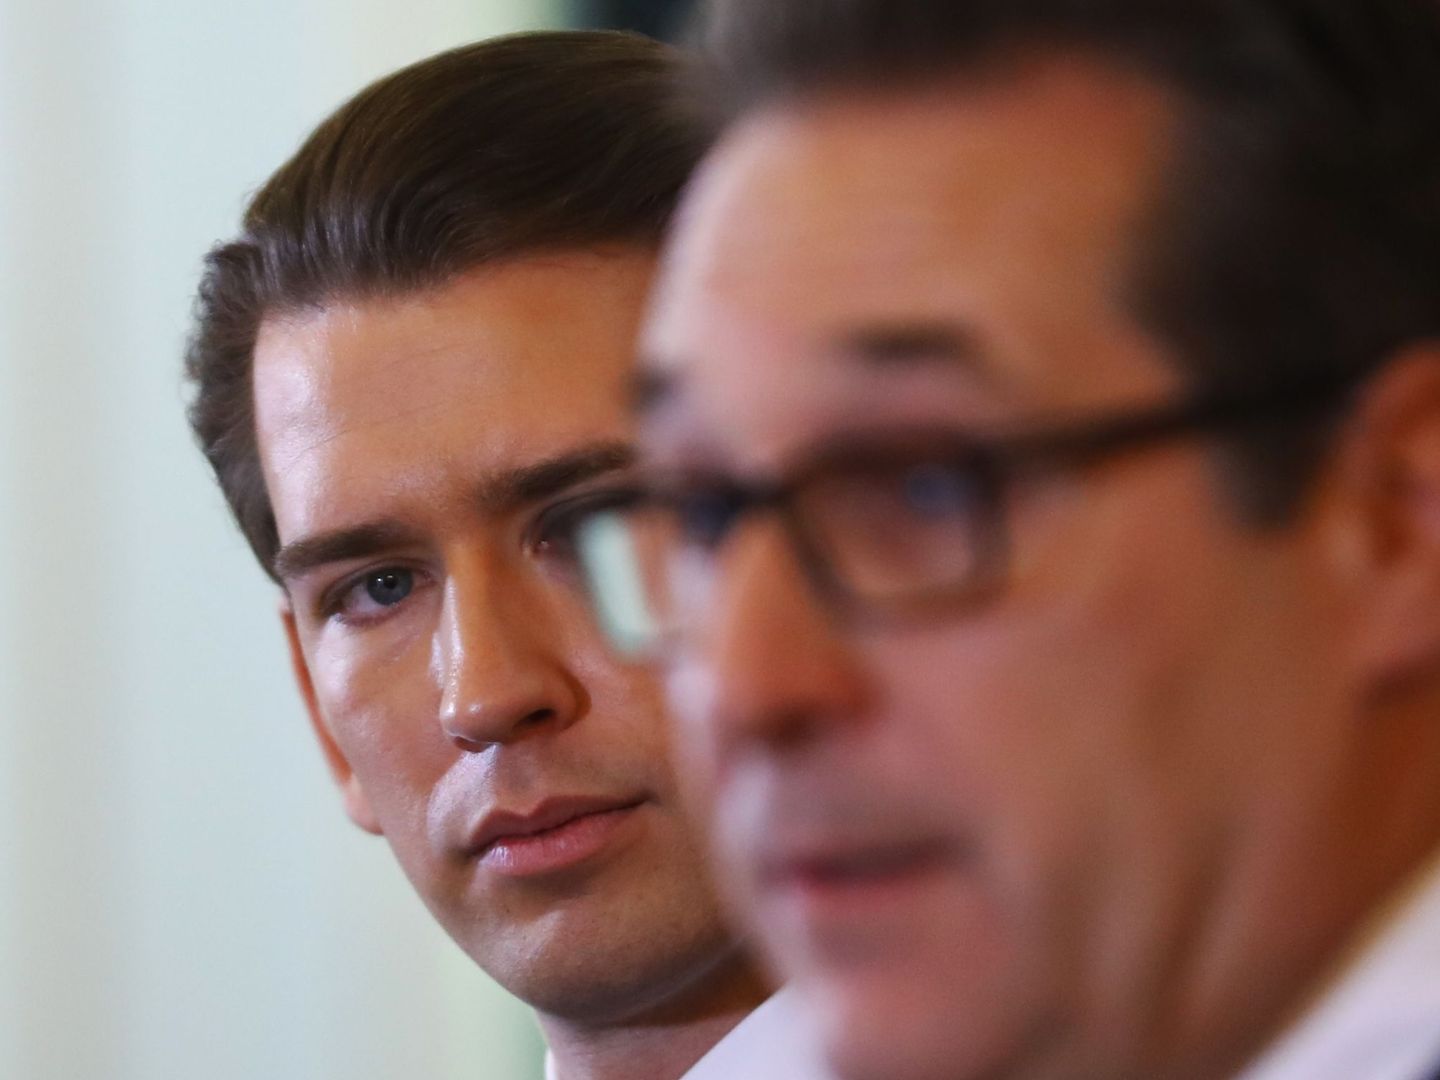 Austria asumirá la presidencia de la UE en julio, con una coalición entre conservadores y ultraderecha. (Reuters)